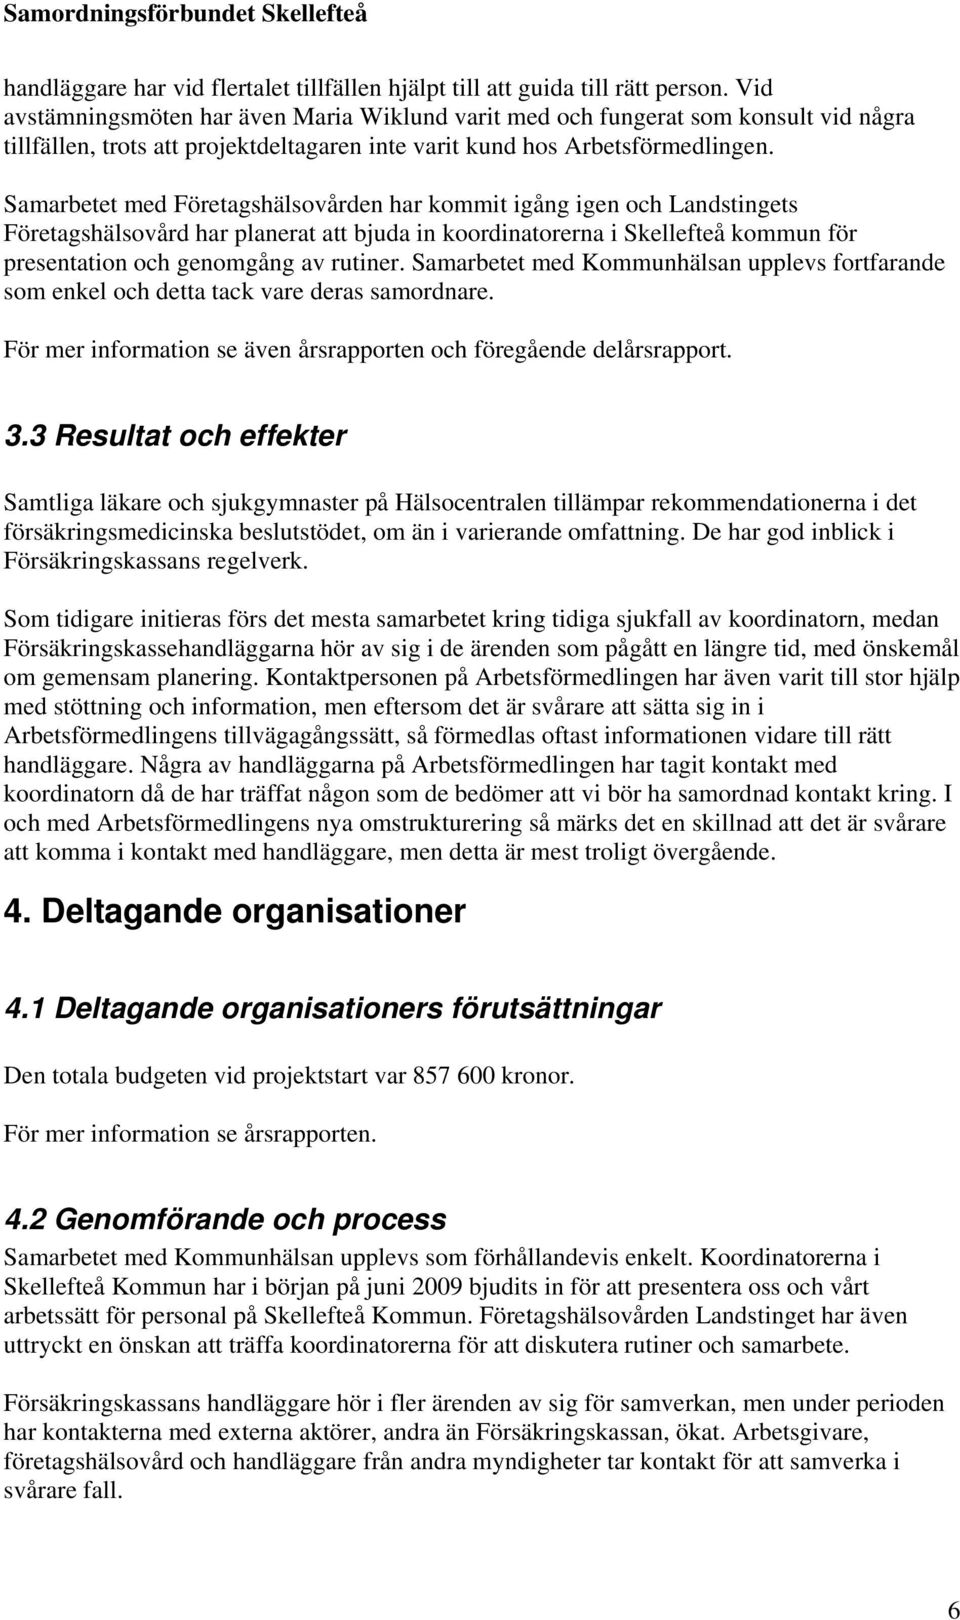 Samarbetet med Företagshälsovården har kommit igång igen och Landstingets Företagshälsovård har planerat att bjuda in koordinatorerna i Skellefteå kommun för presentation och genomgång av rutiner.